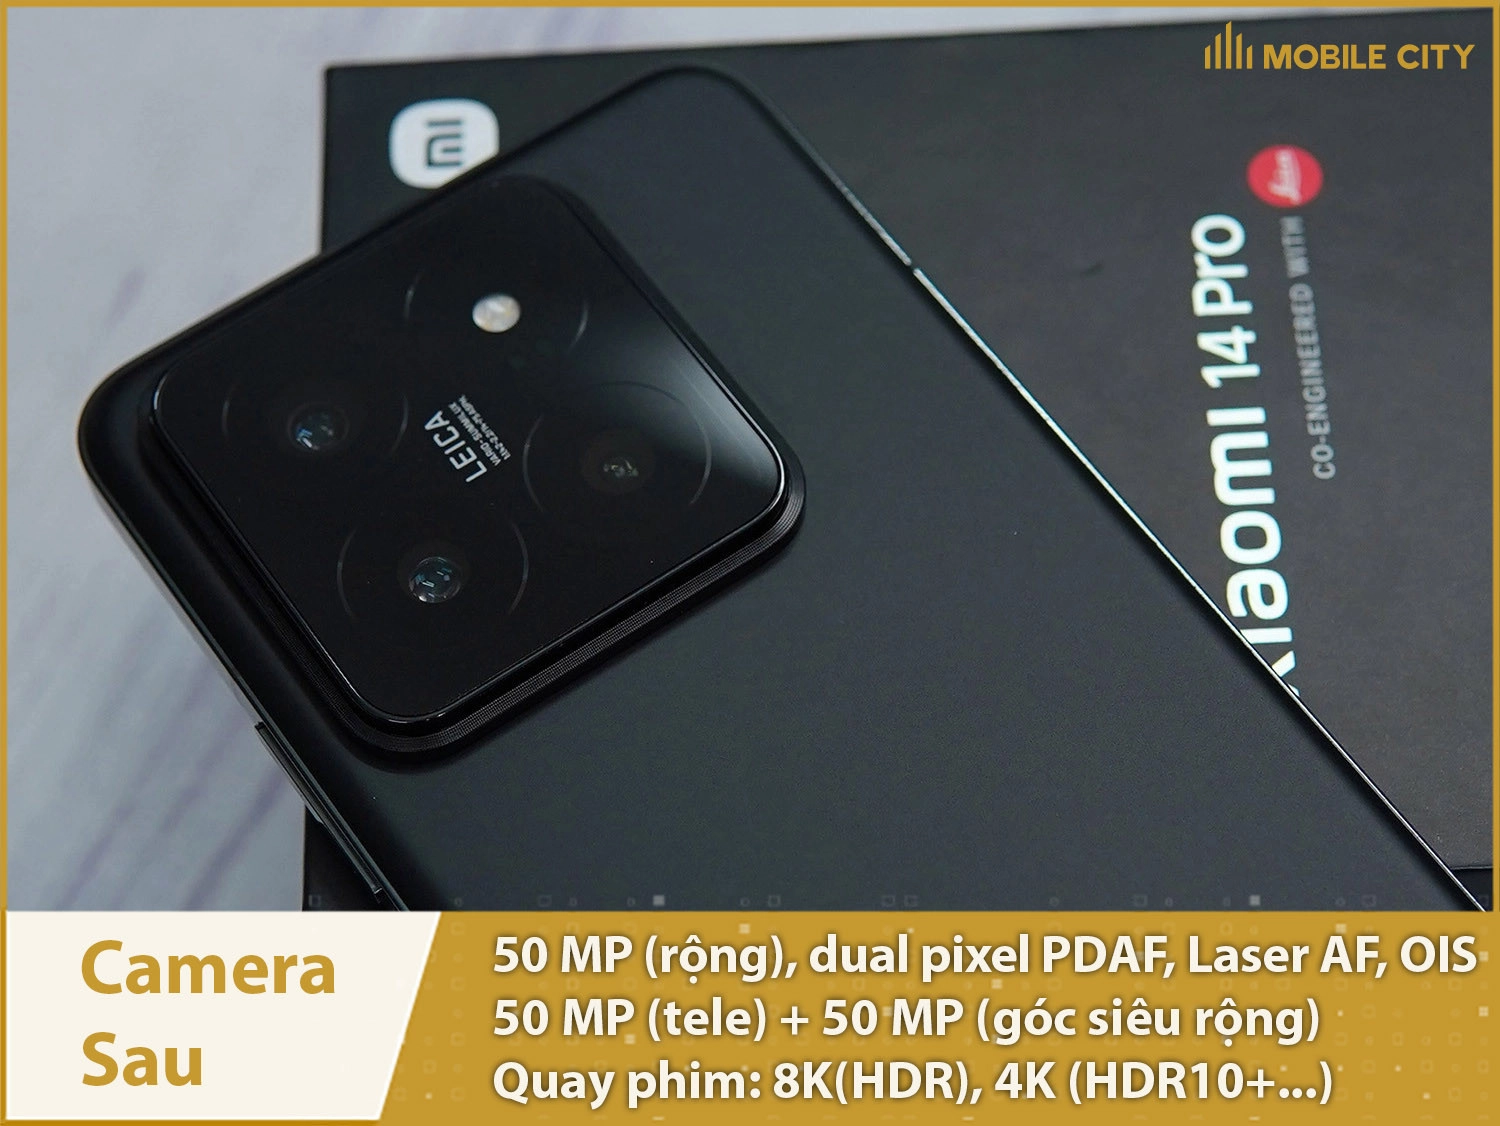 Hệ thống camera sau 3 ống kính đều 50MP, quay phim 8K